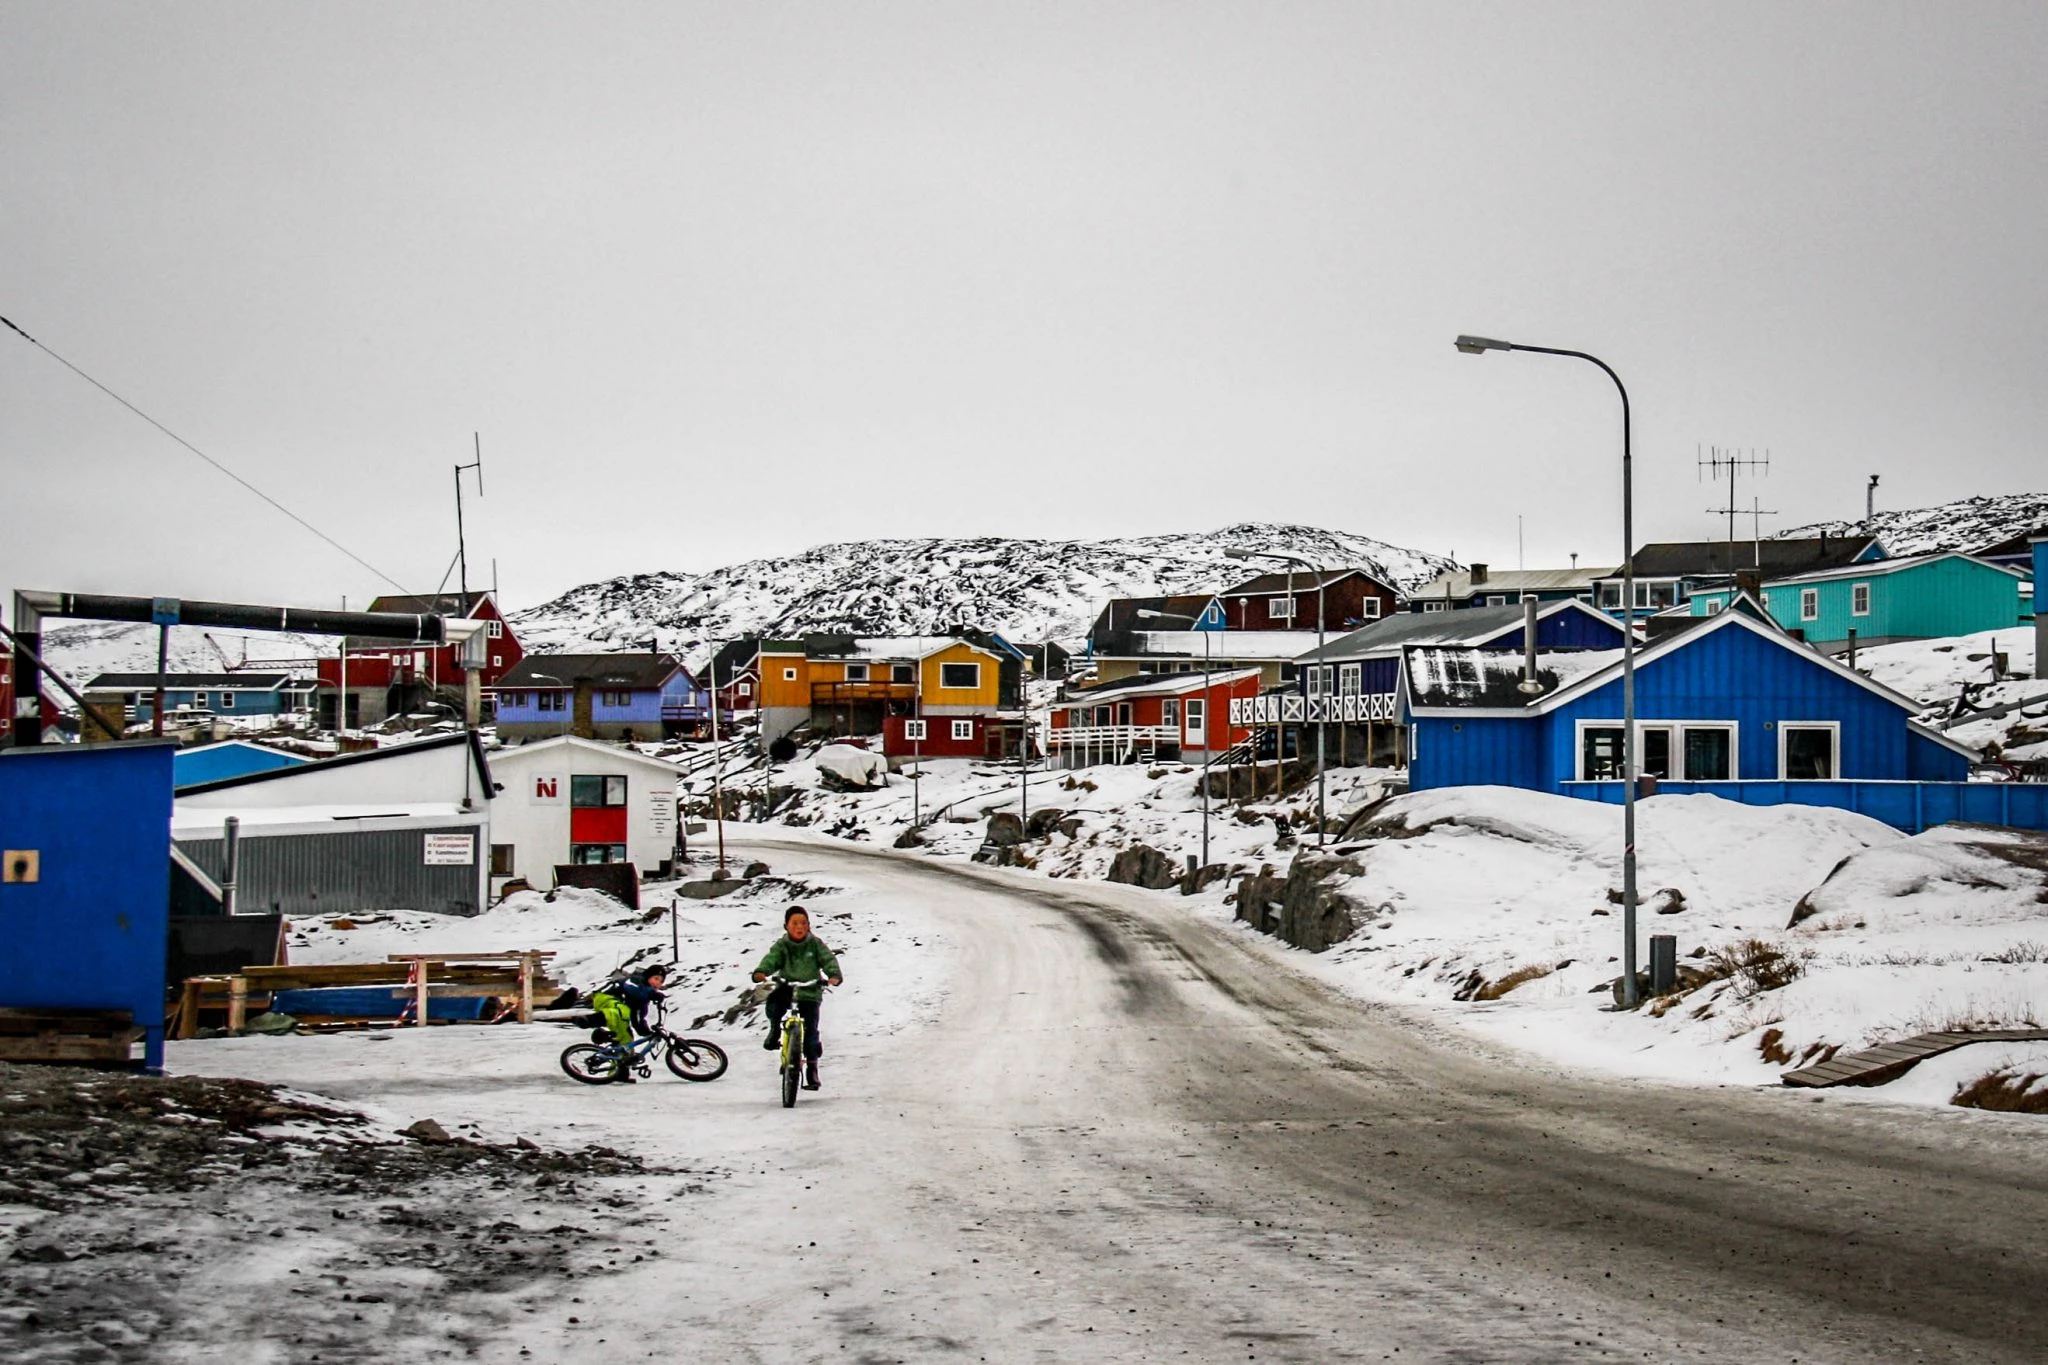 Drenge på Cykel i Grønlandsk Gade